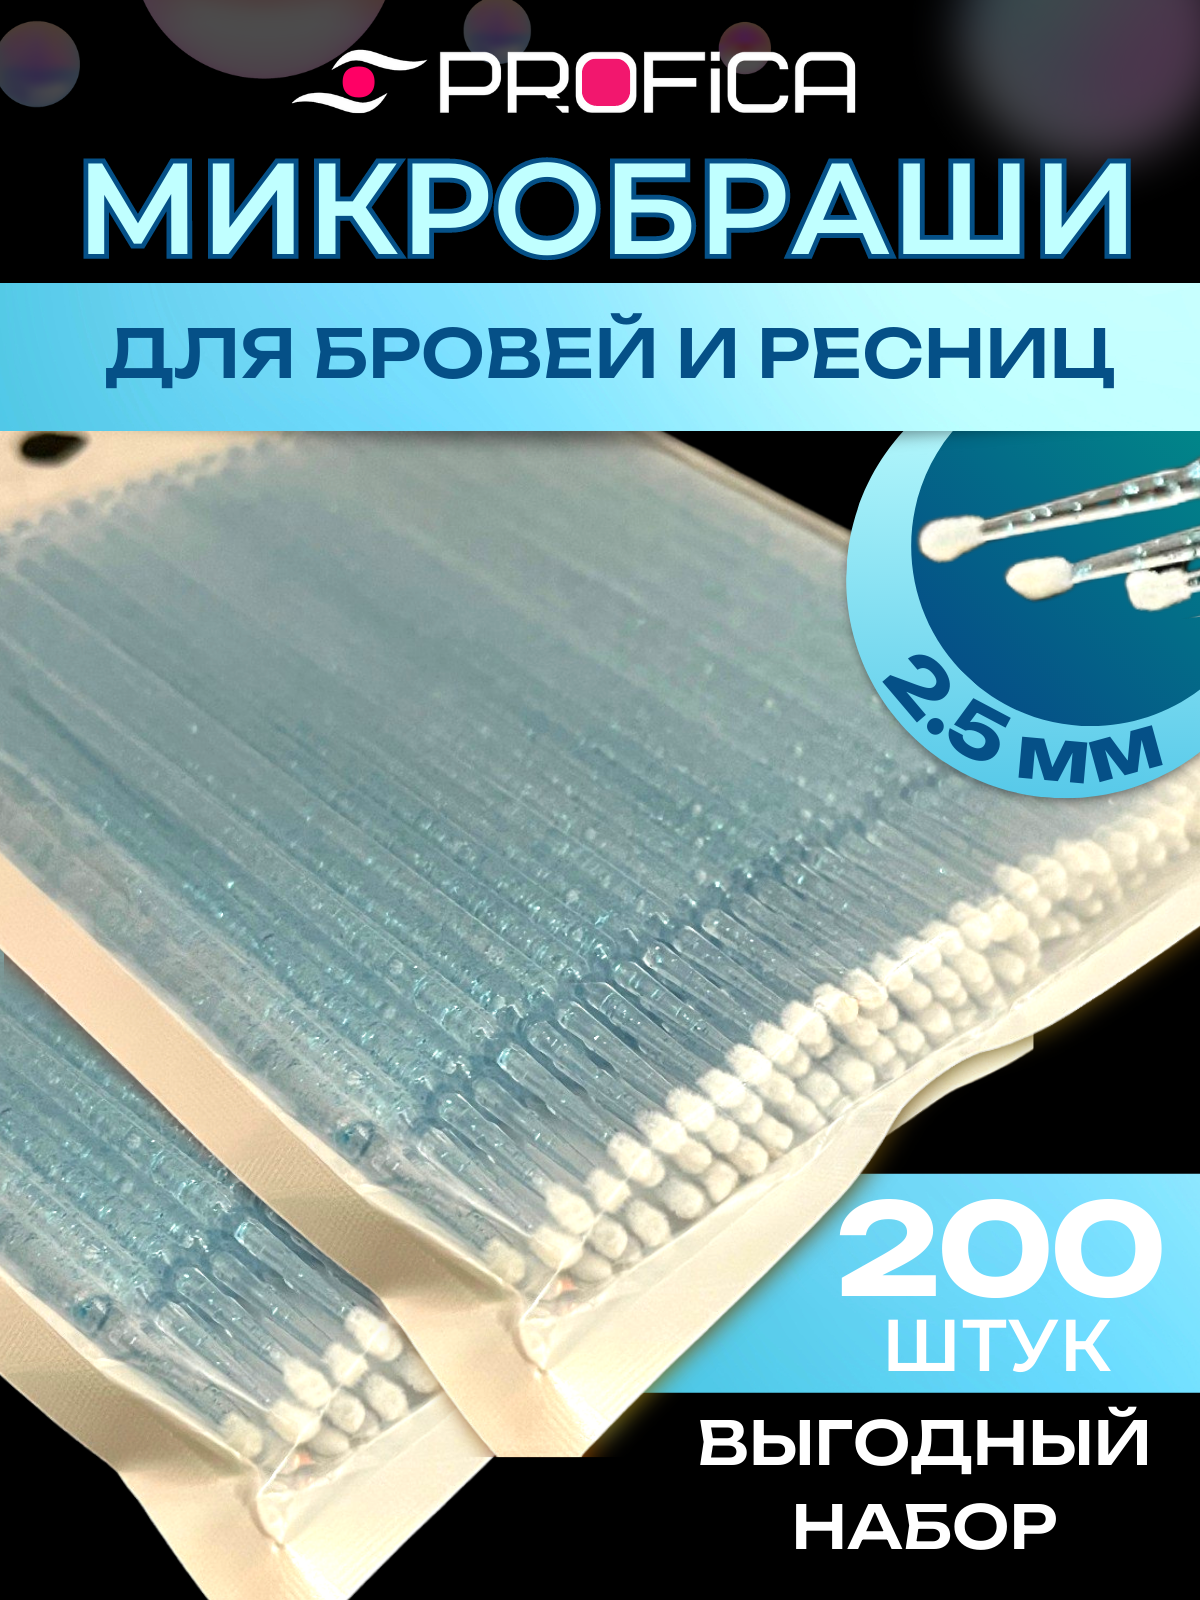 Микробраши 2,5 мм голубые с блеском 200 шт. Микрощеточки безворсовые / браши для ресниц